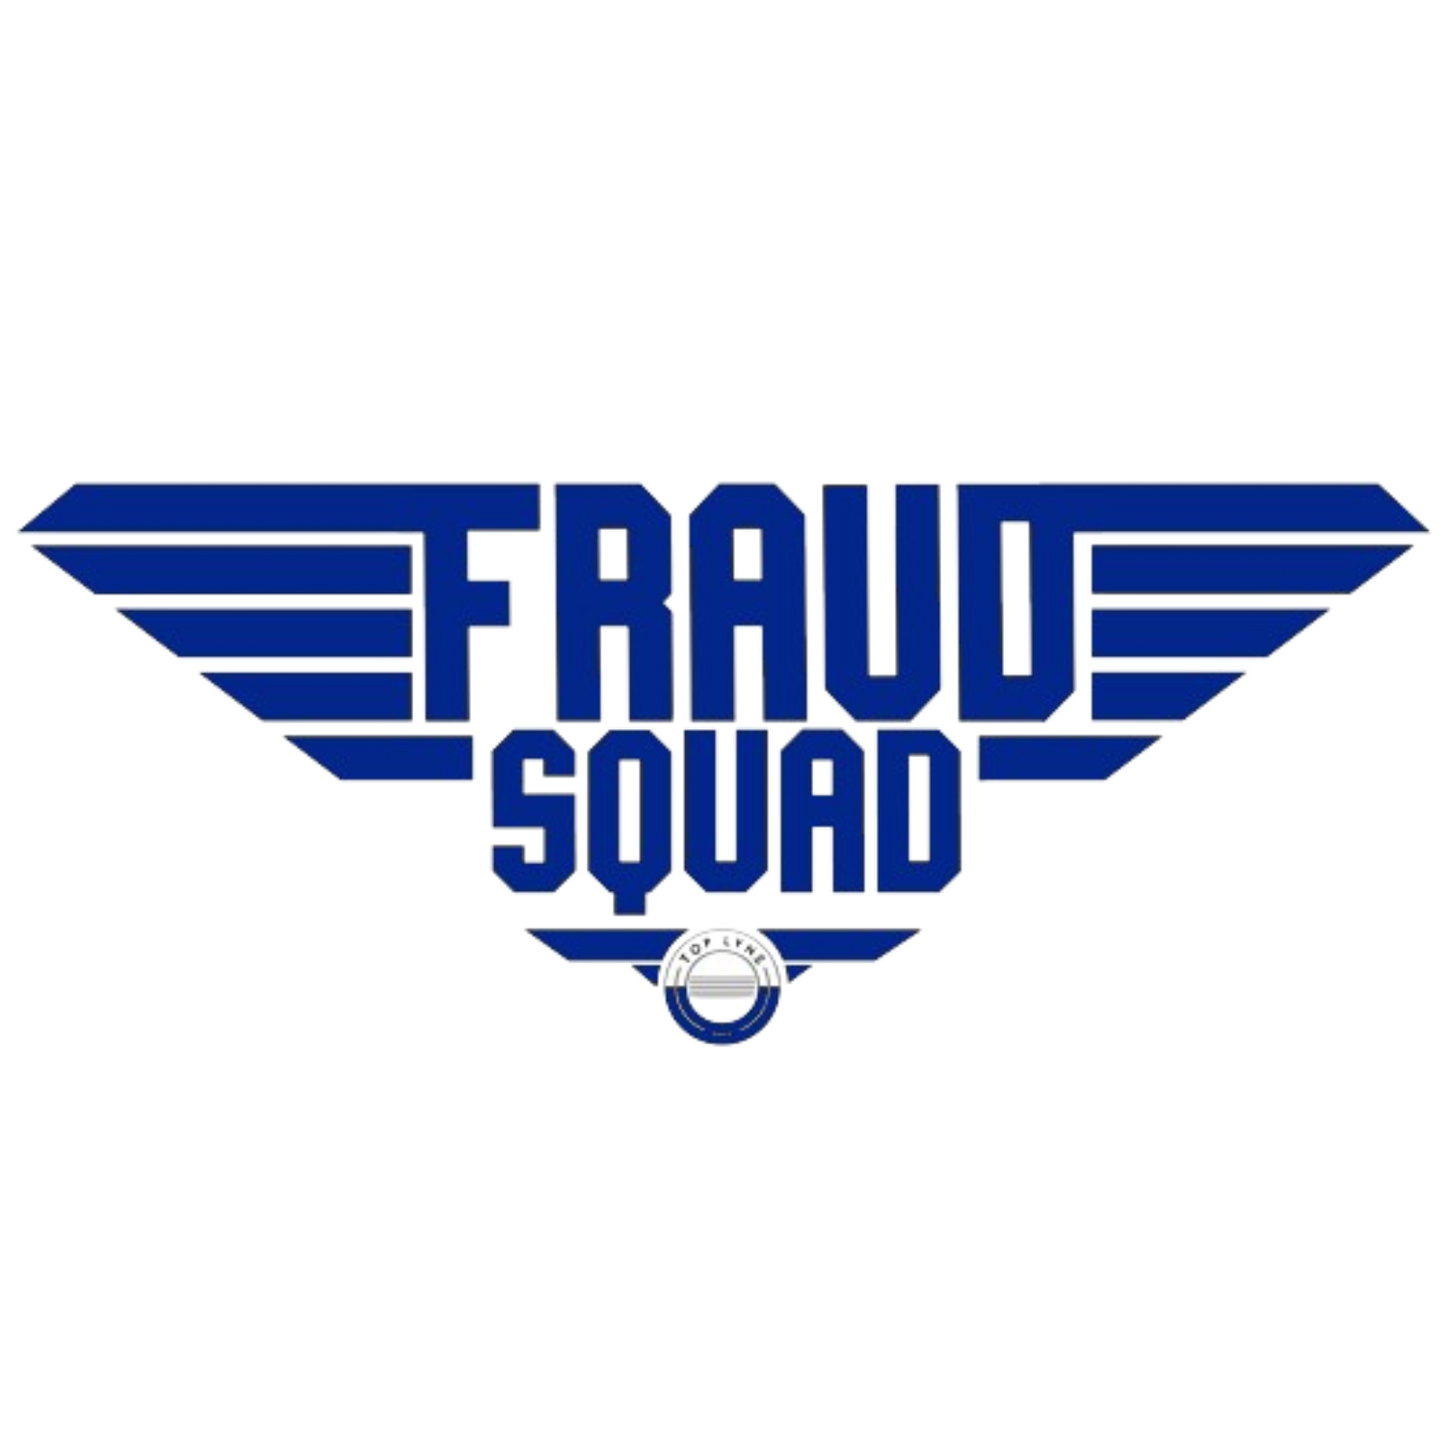 TLM Fraud Squad Tee